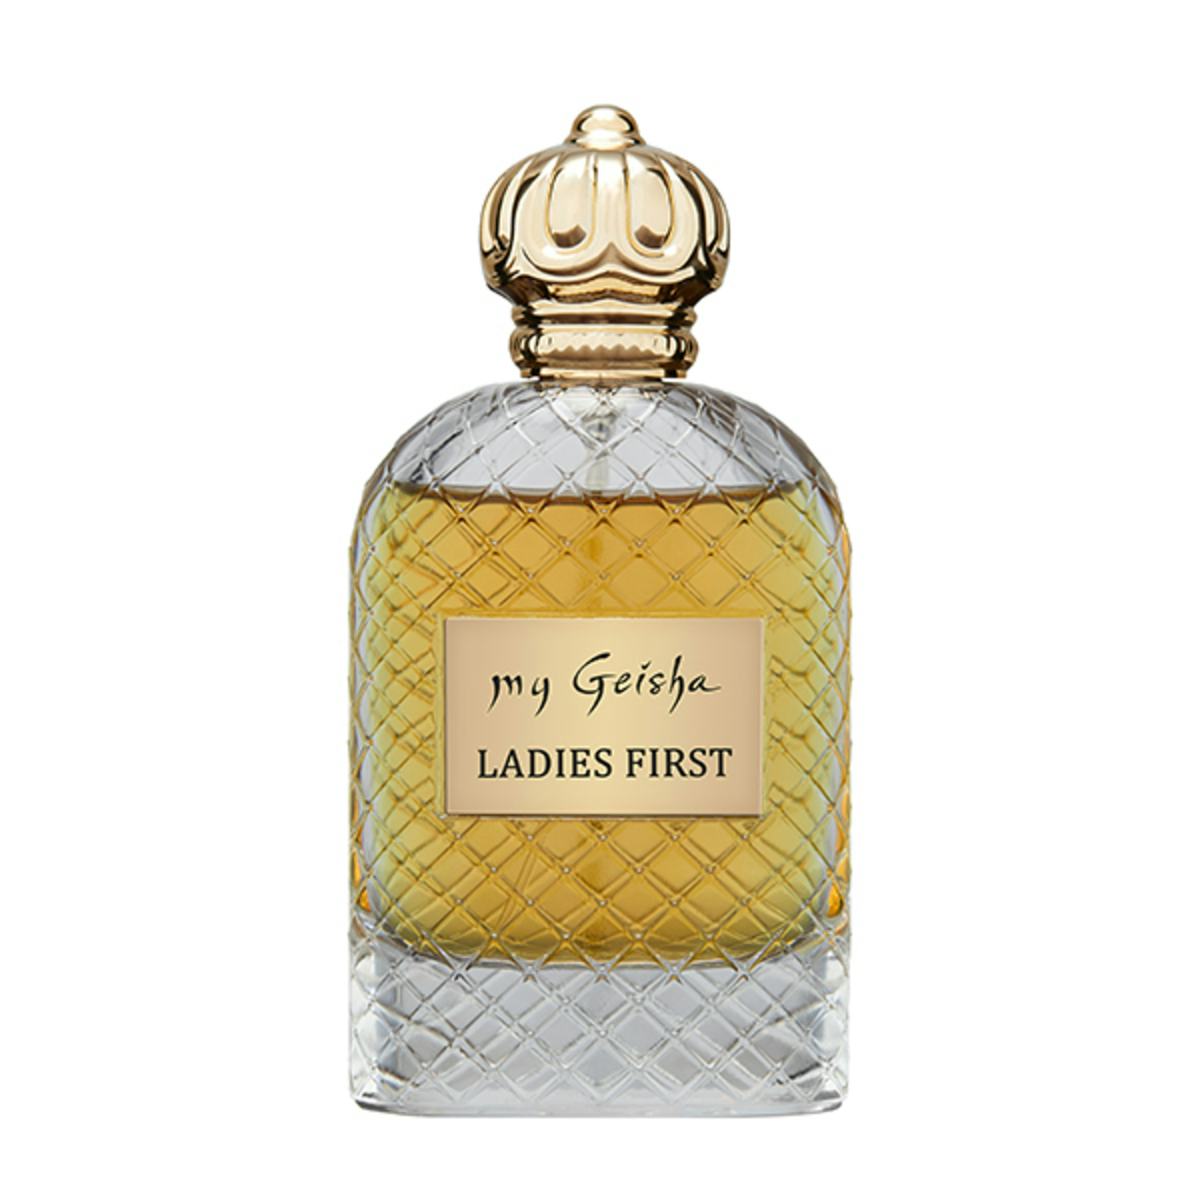 Extrait de parfum "Ladies First" 100 ml, handwerkliches Produkt für den Direktverkauf in der Schweiz